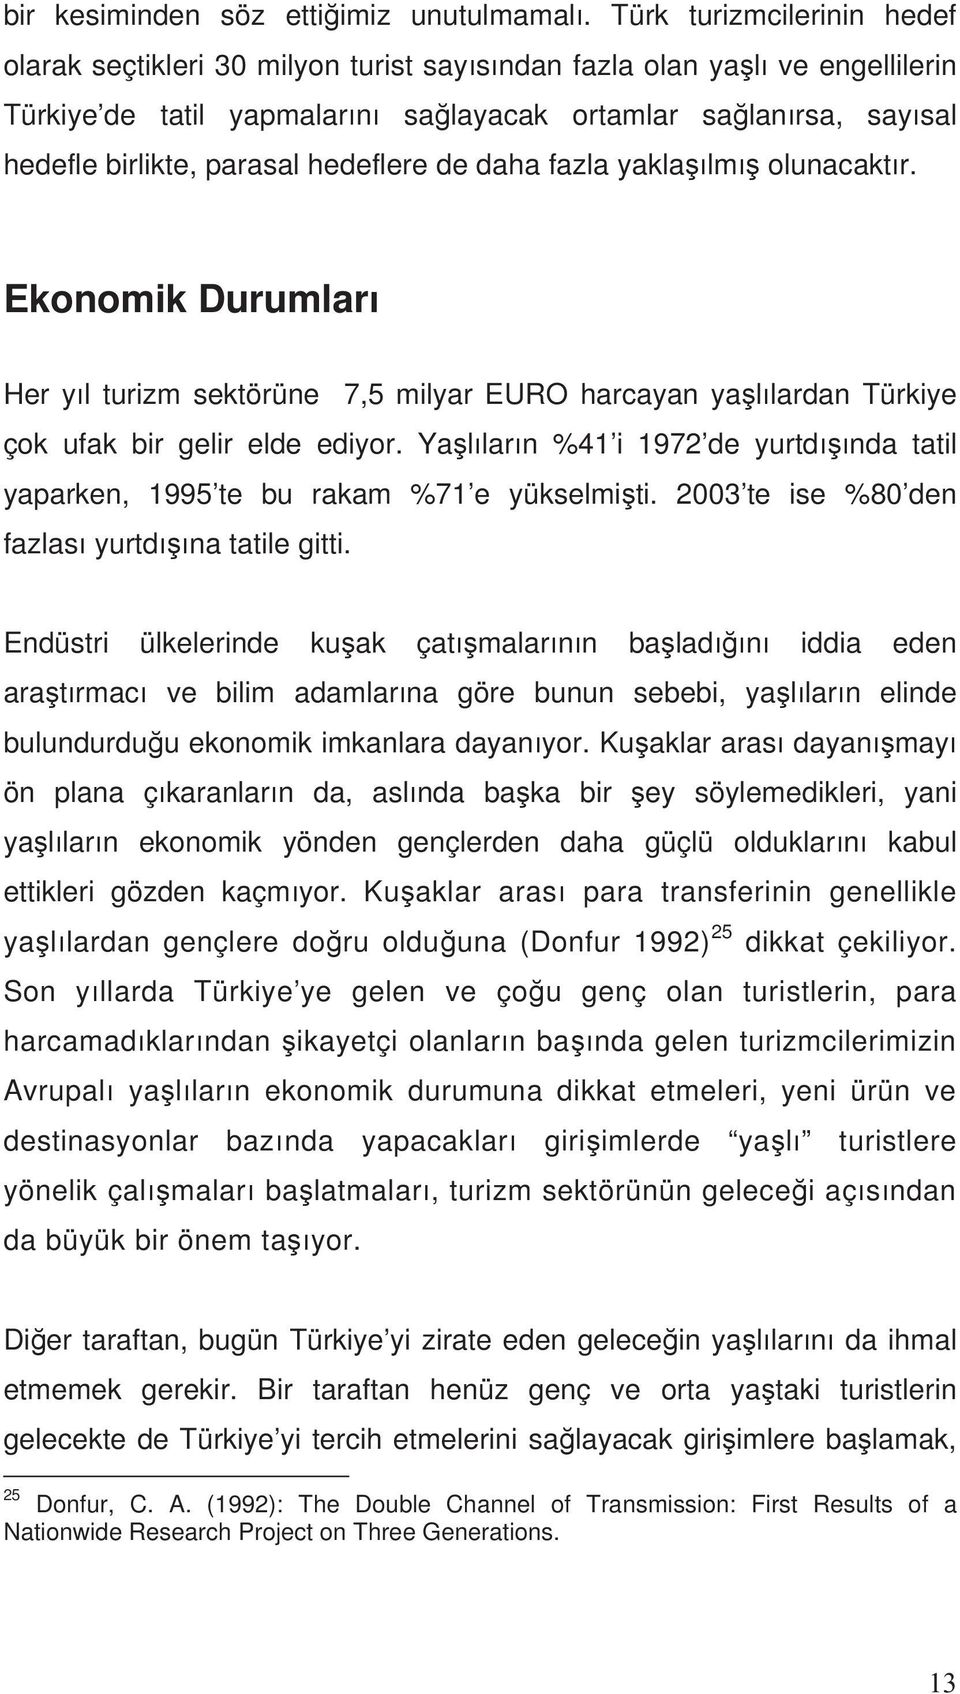 hedeflere de daha fazla yakla lm olunacakt r. Ekonomik Durumlar Her y l turizm sektörüne 7,5 milyar EURO harcayan ya l lardan Türkiye çok ufak bir gelir elde ediyor.